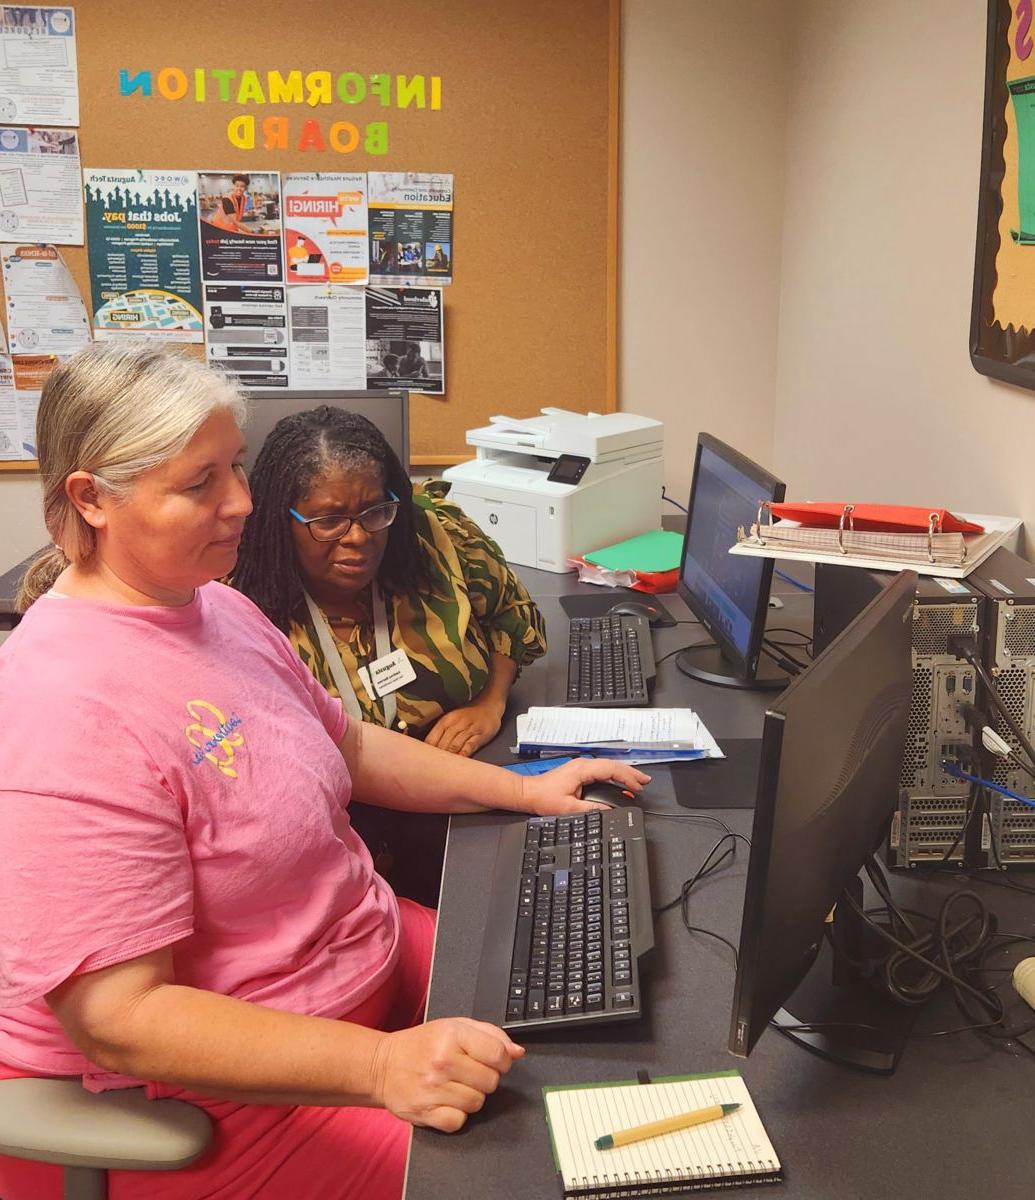 一站式服务的教职员工帮助正在使用电脑的学生.